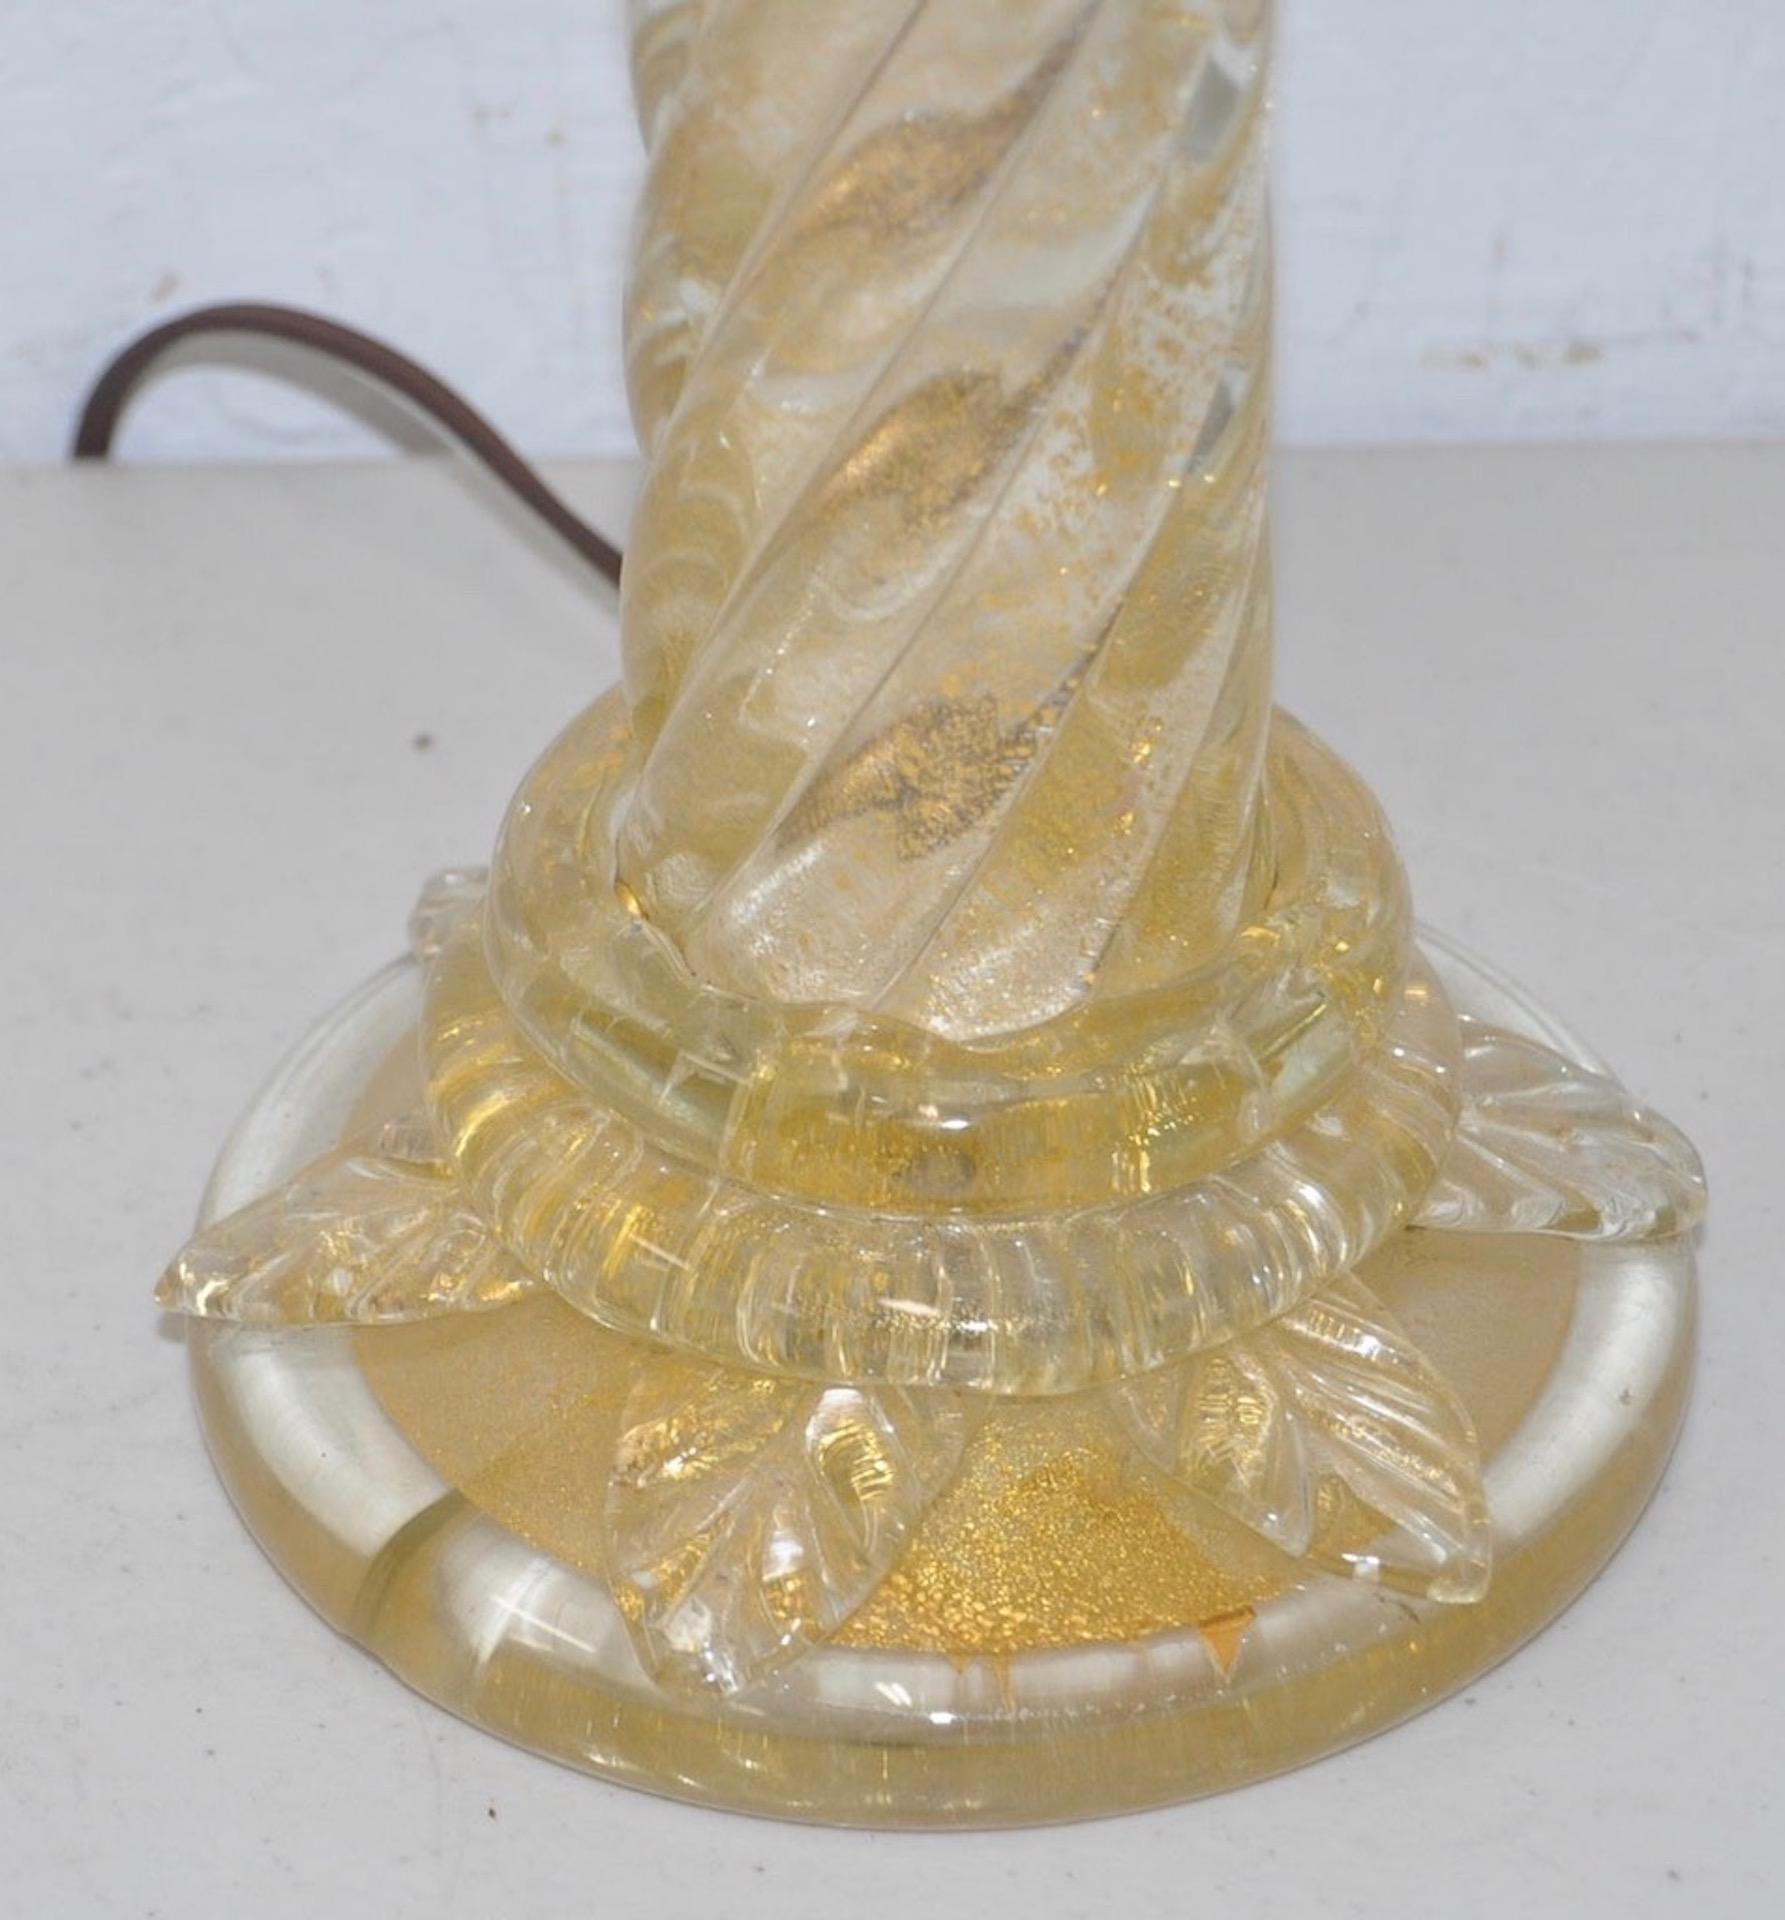 Lampe de table vintage en mouchetures d'or de Murano attribuée à Barovier, circa 1940s

Magnifique lampe de table soufflée à la main attribuée à Barovier, société vénitienne de verrerie fondée en 1295 !

5 1/2